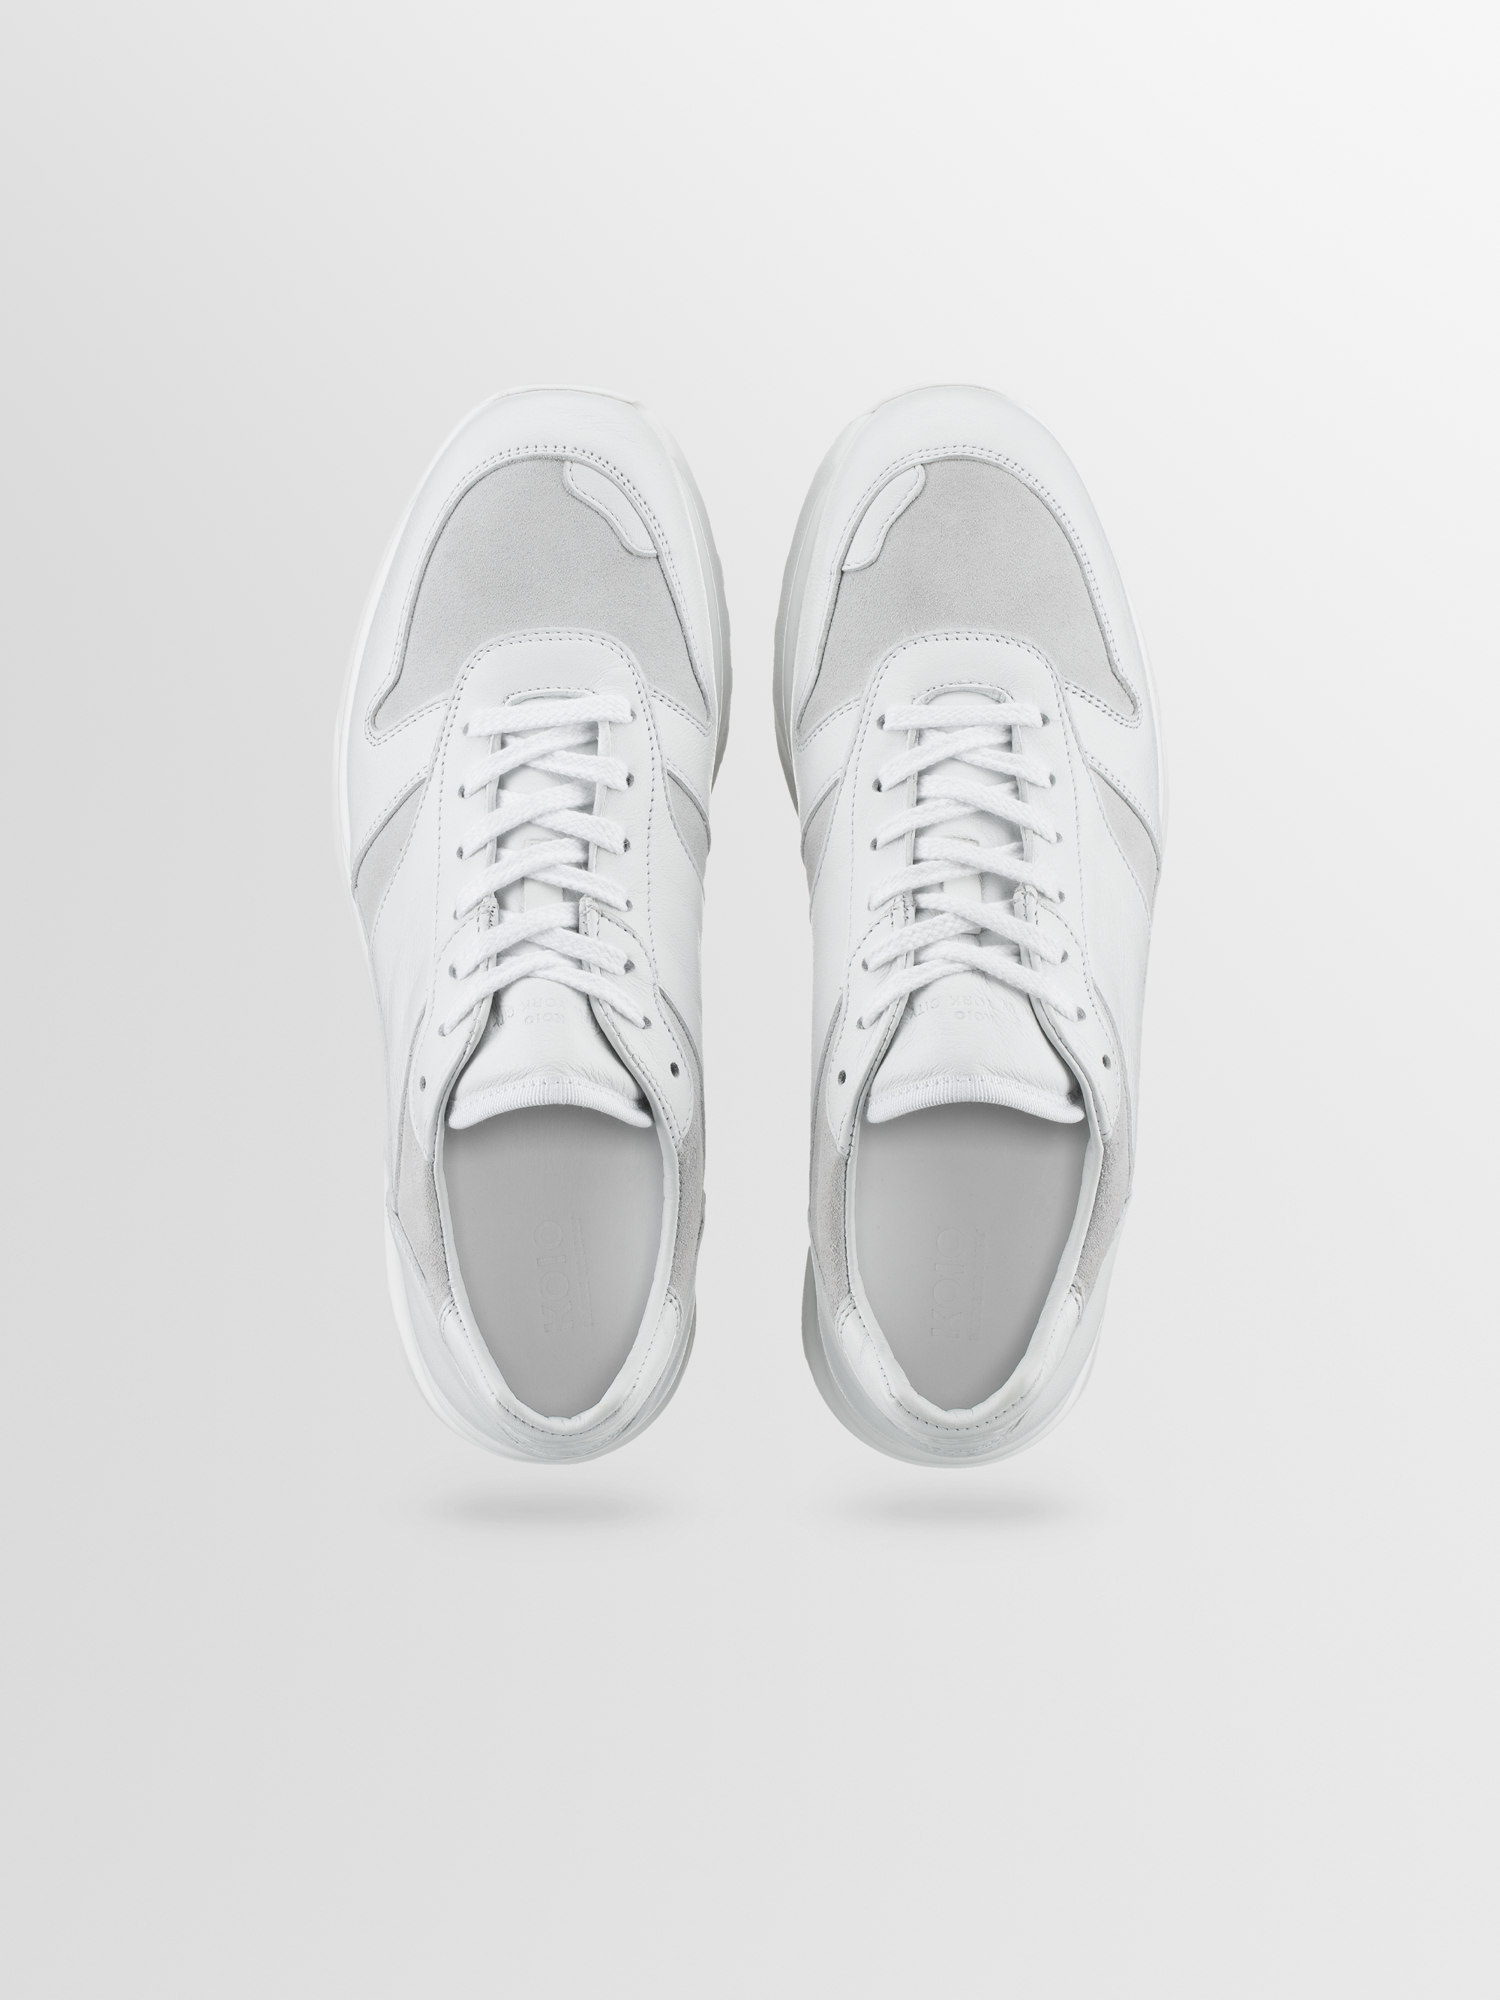 Men's White & Grey Leather Sneakers | Volterra in Avorio | Koio – KOIO